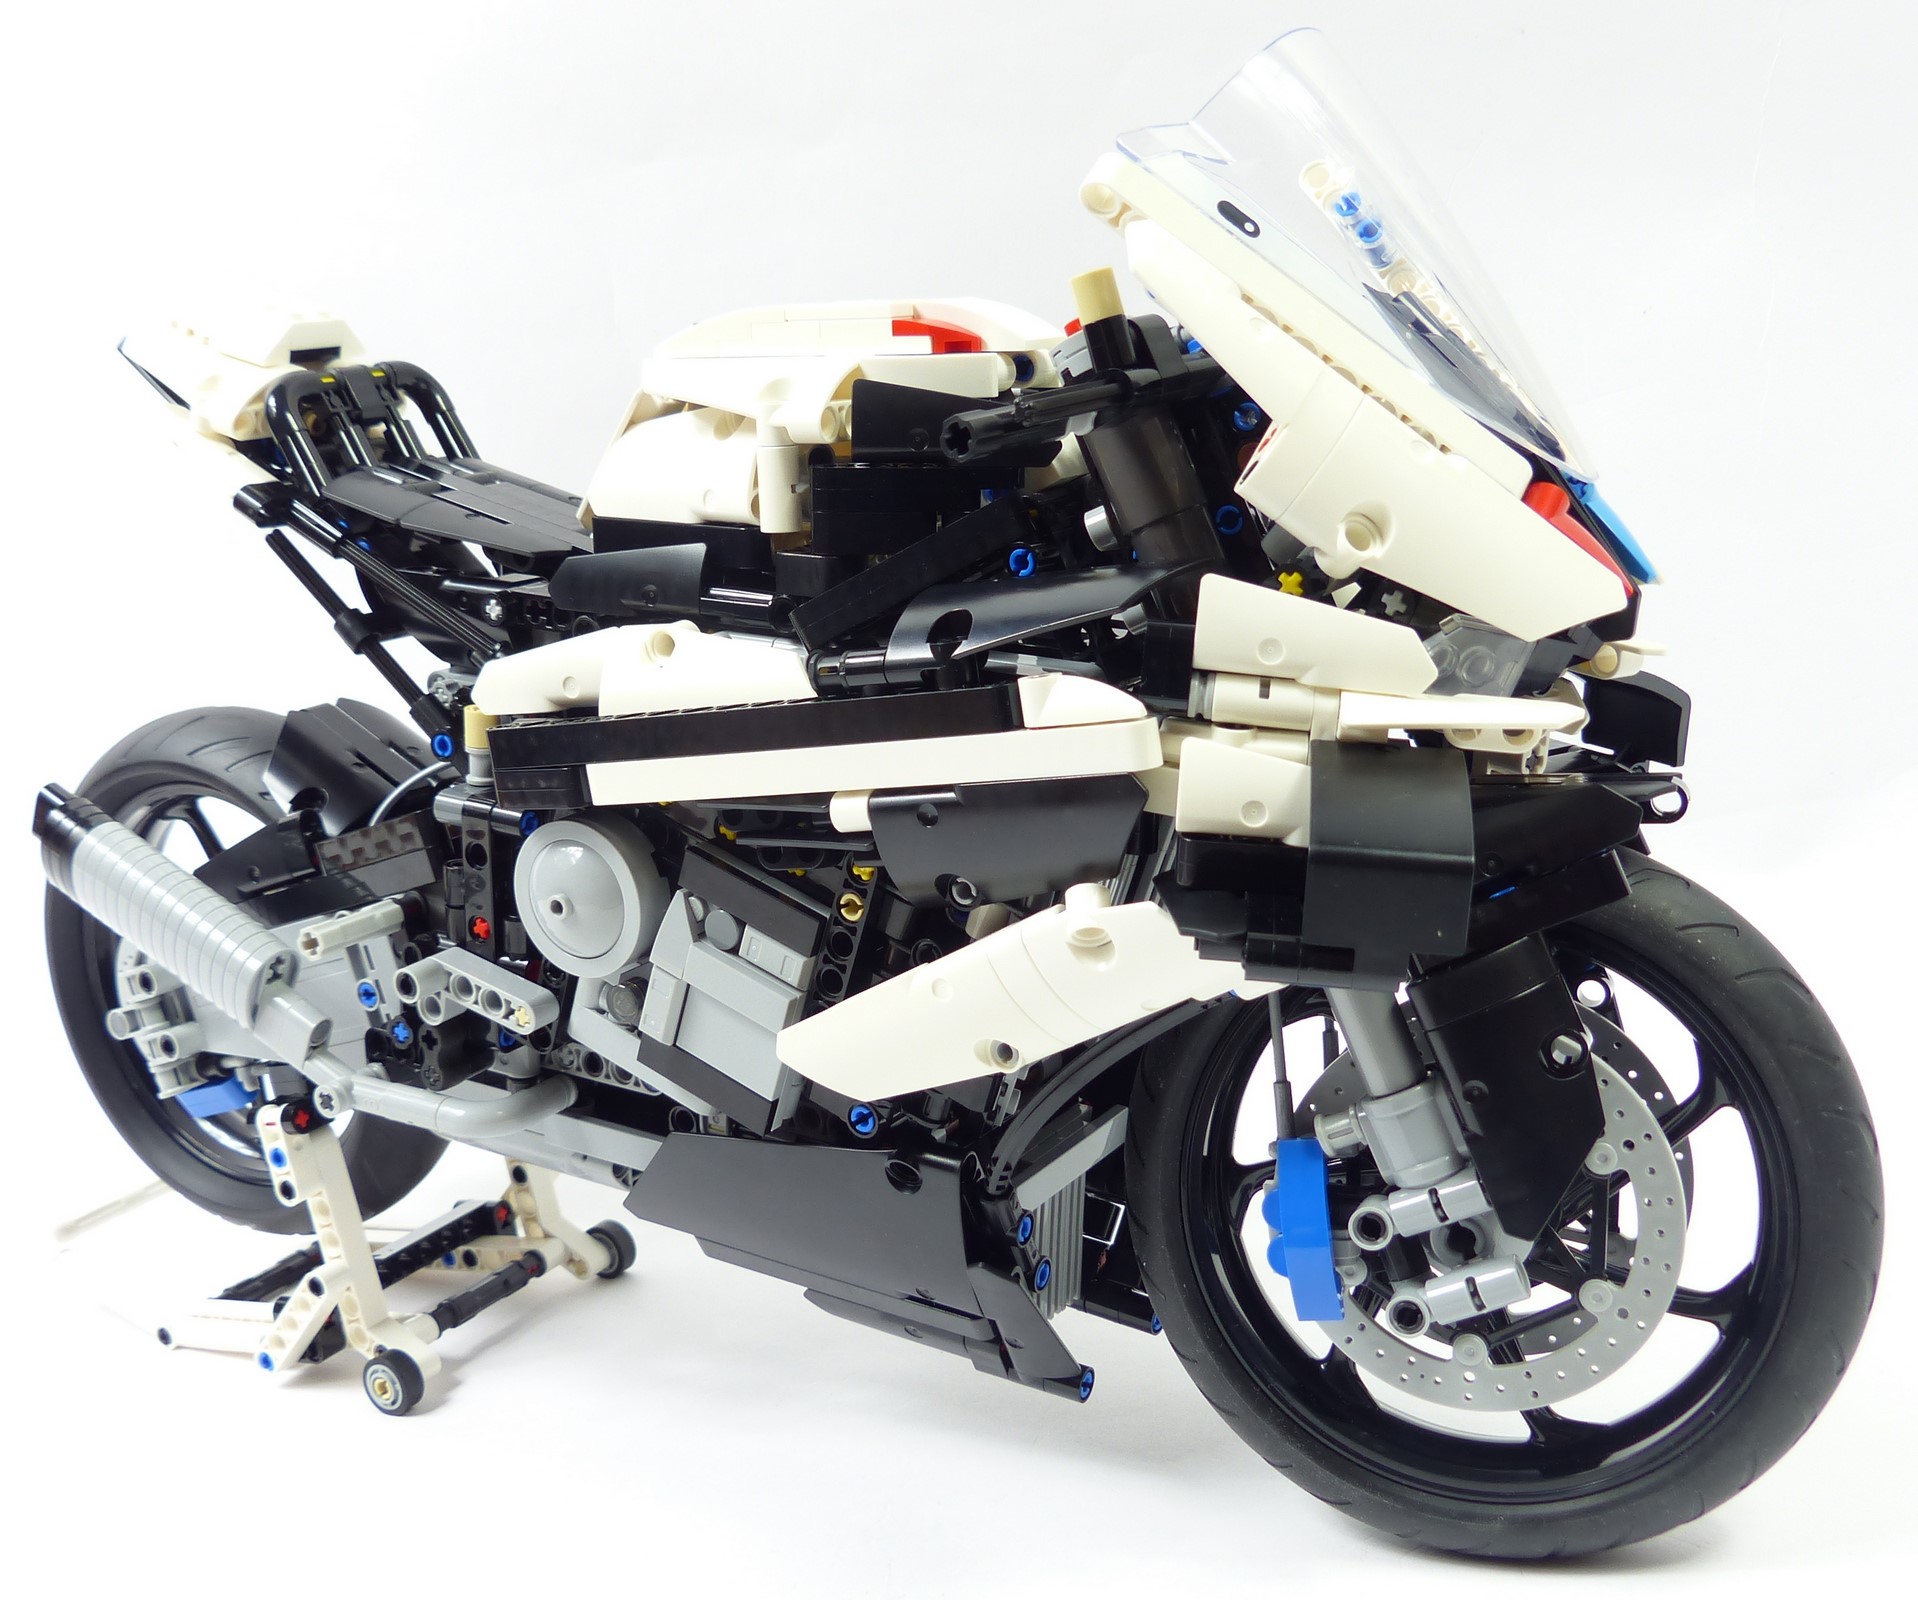 LEGO® Technic - 42130 - BMW M 1000 RR